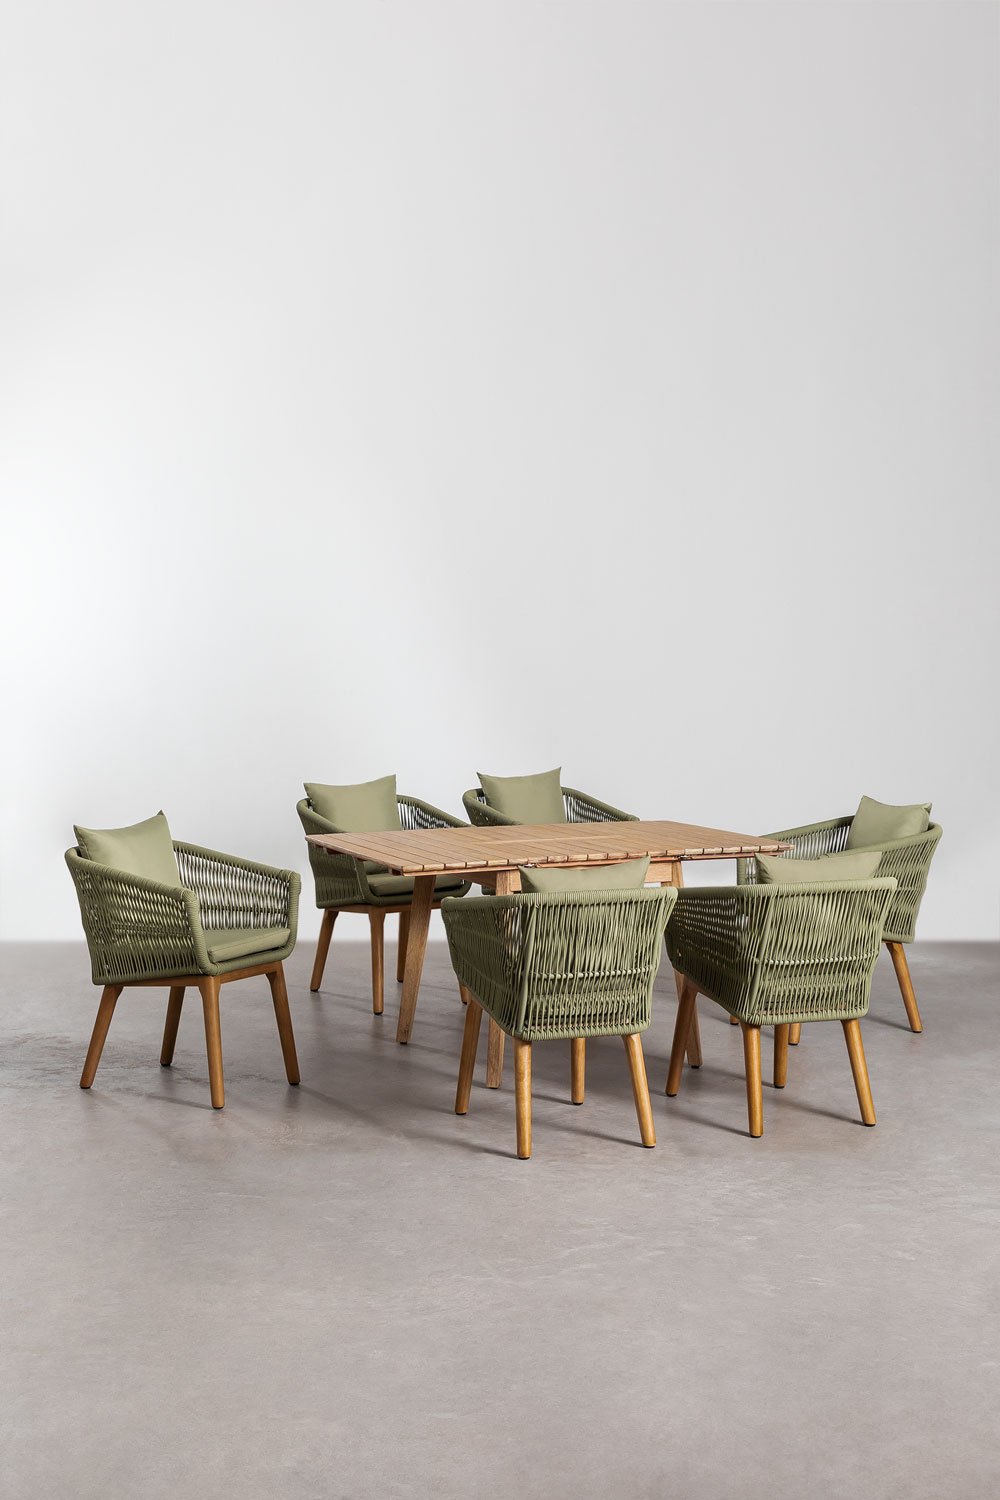 Drewniany rozkładany stół (90-150x90 cm) Naele i 6 krzeseł do jadalni Barker, obrazek w galerii 1